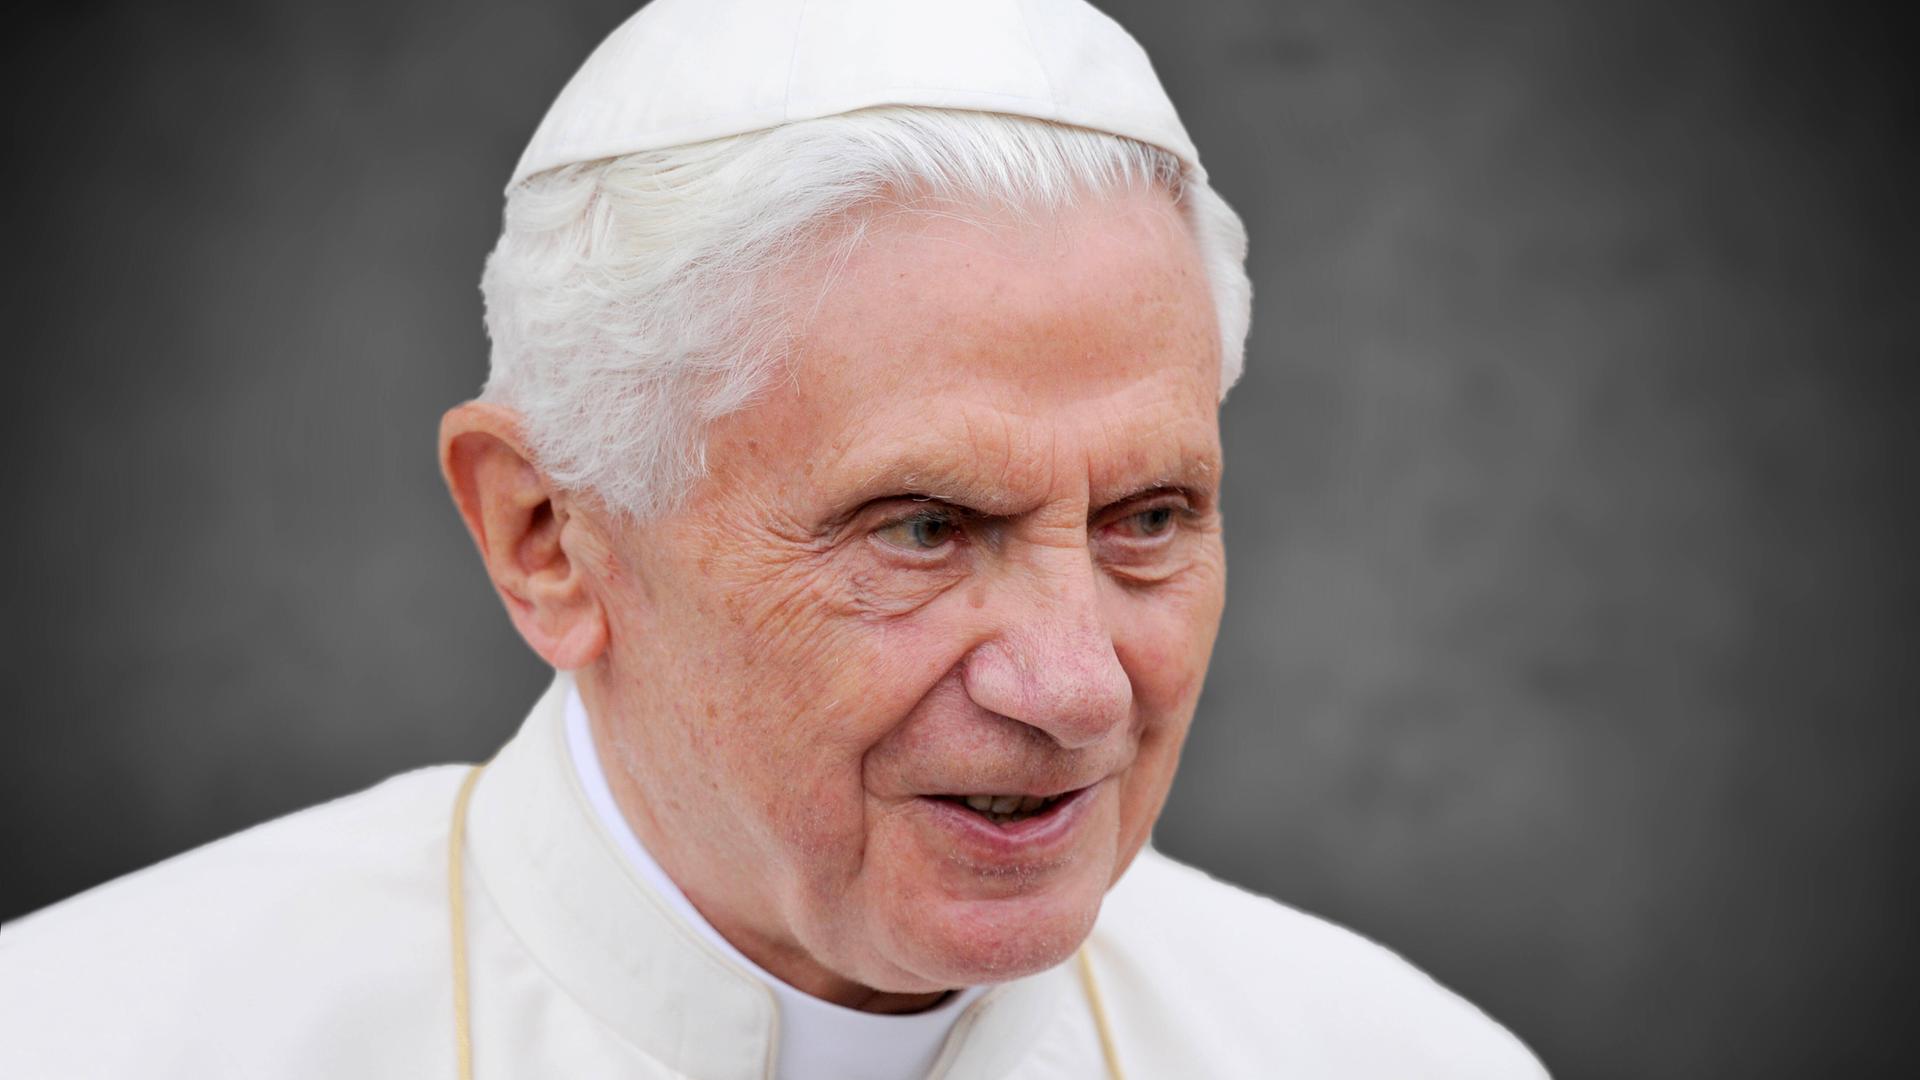 Katholische Kirche - Vorwürfe gegen früheren Papst Benedikt XVI. und Kardinal Marx